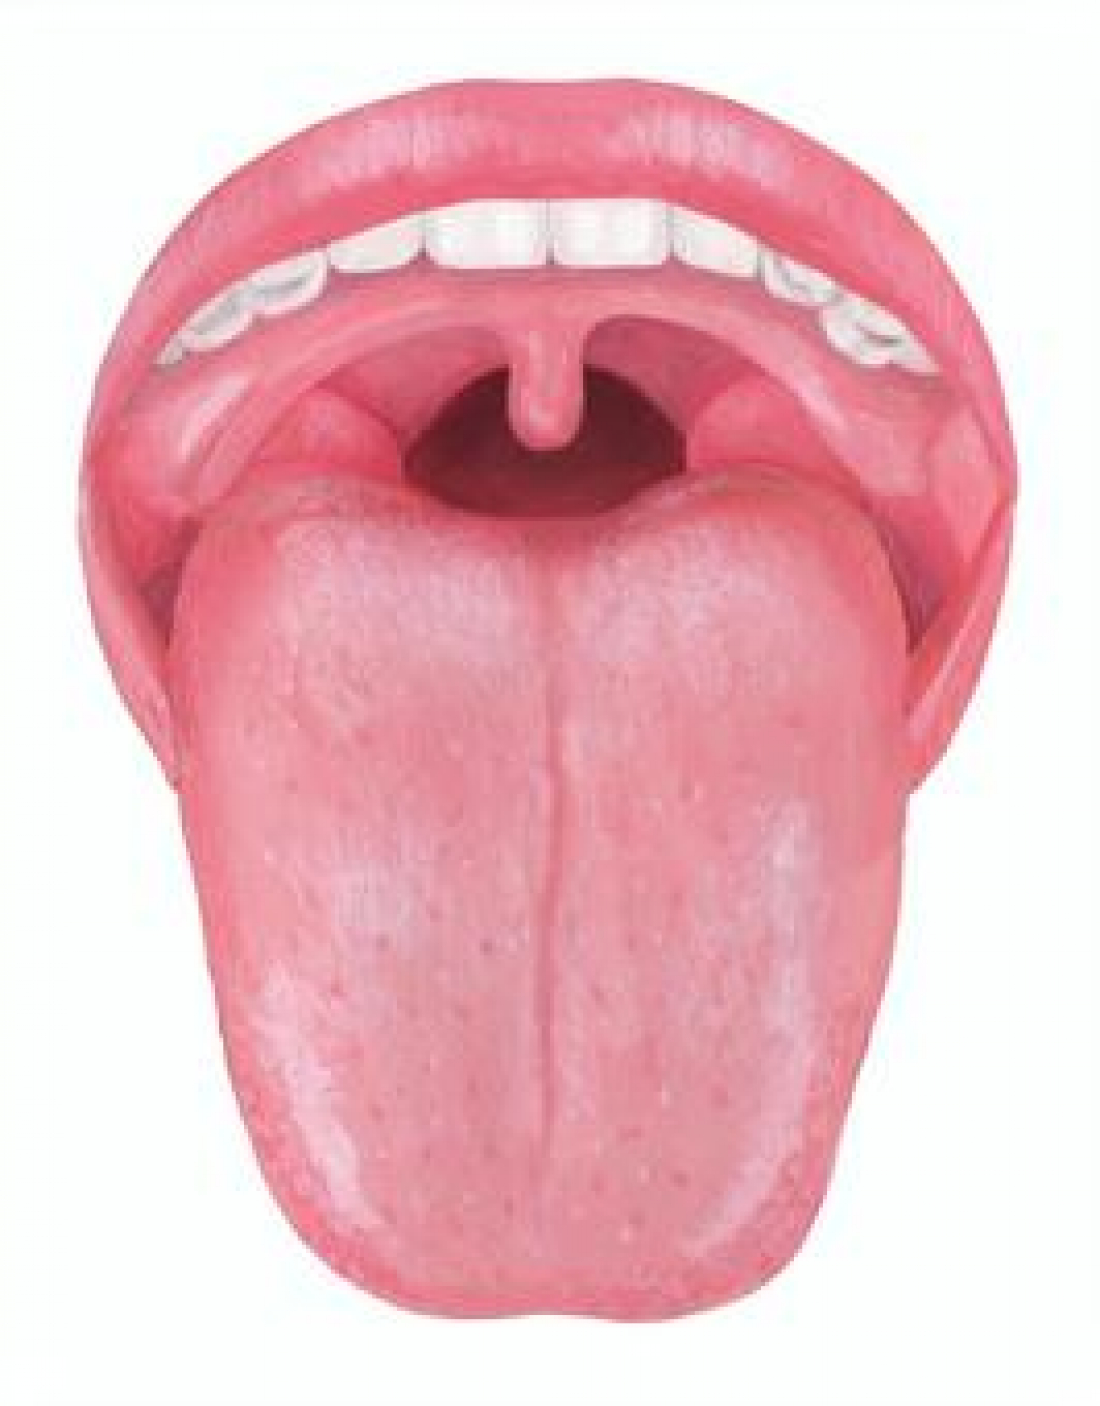 舌の状態で何が分かるの？